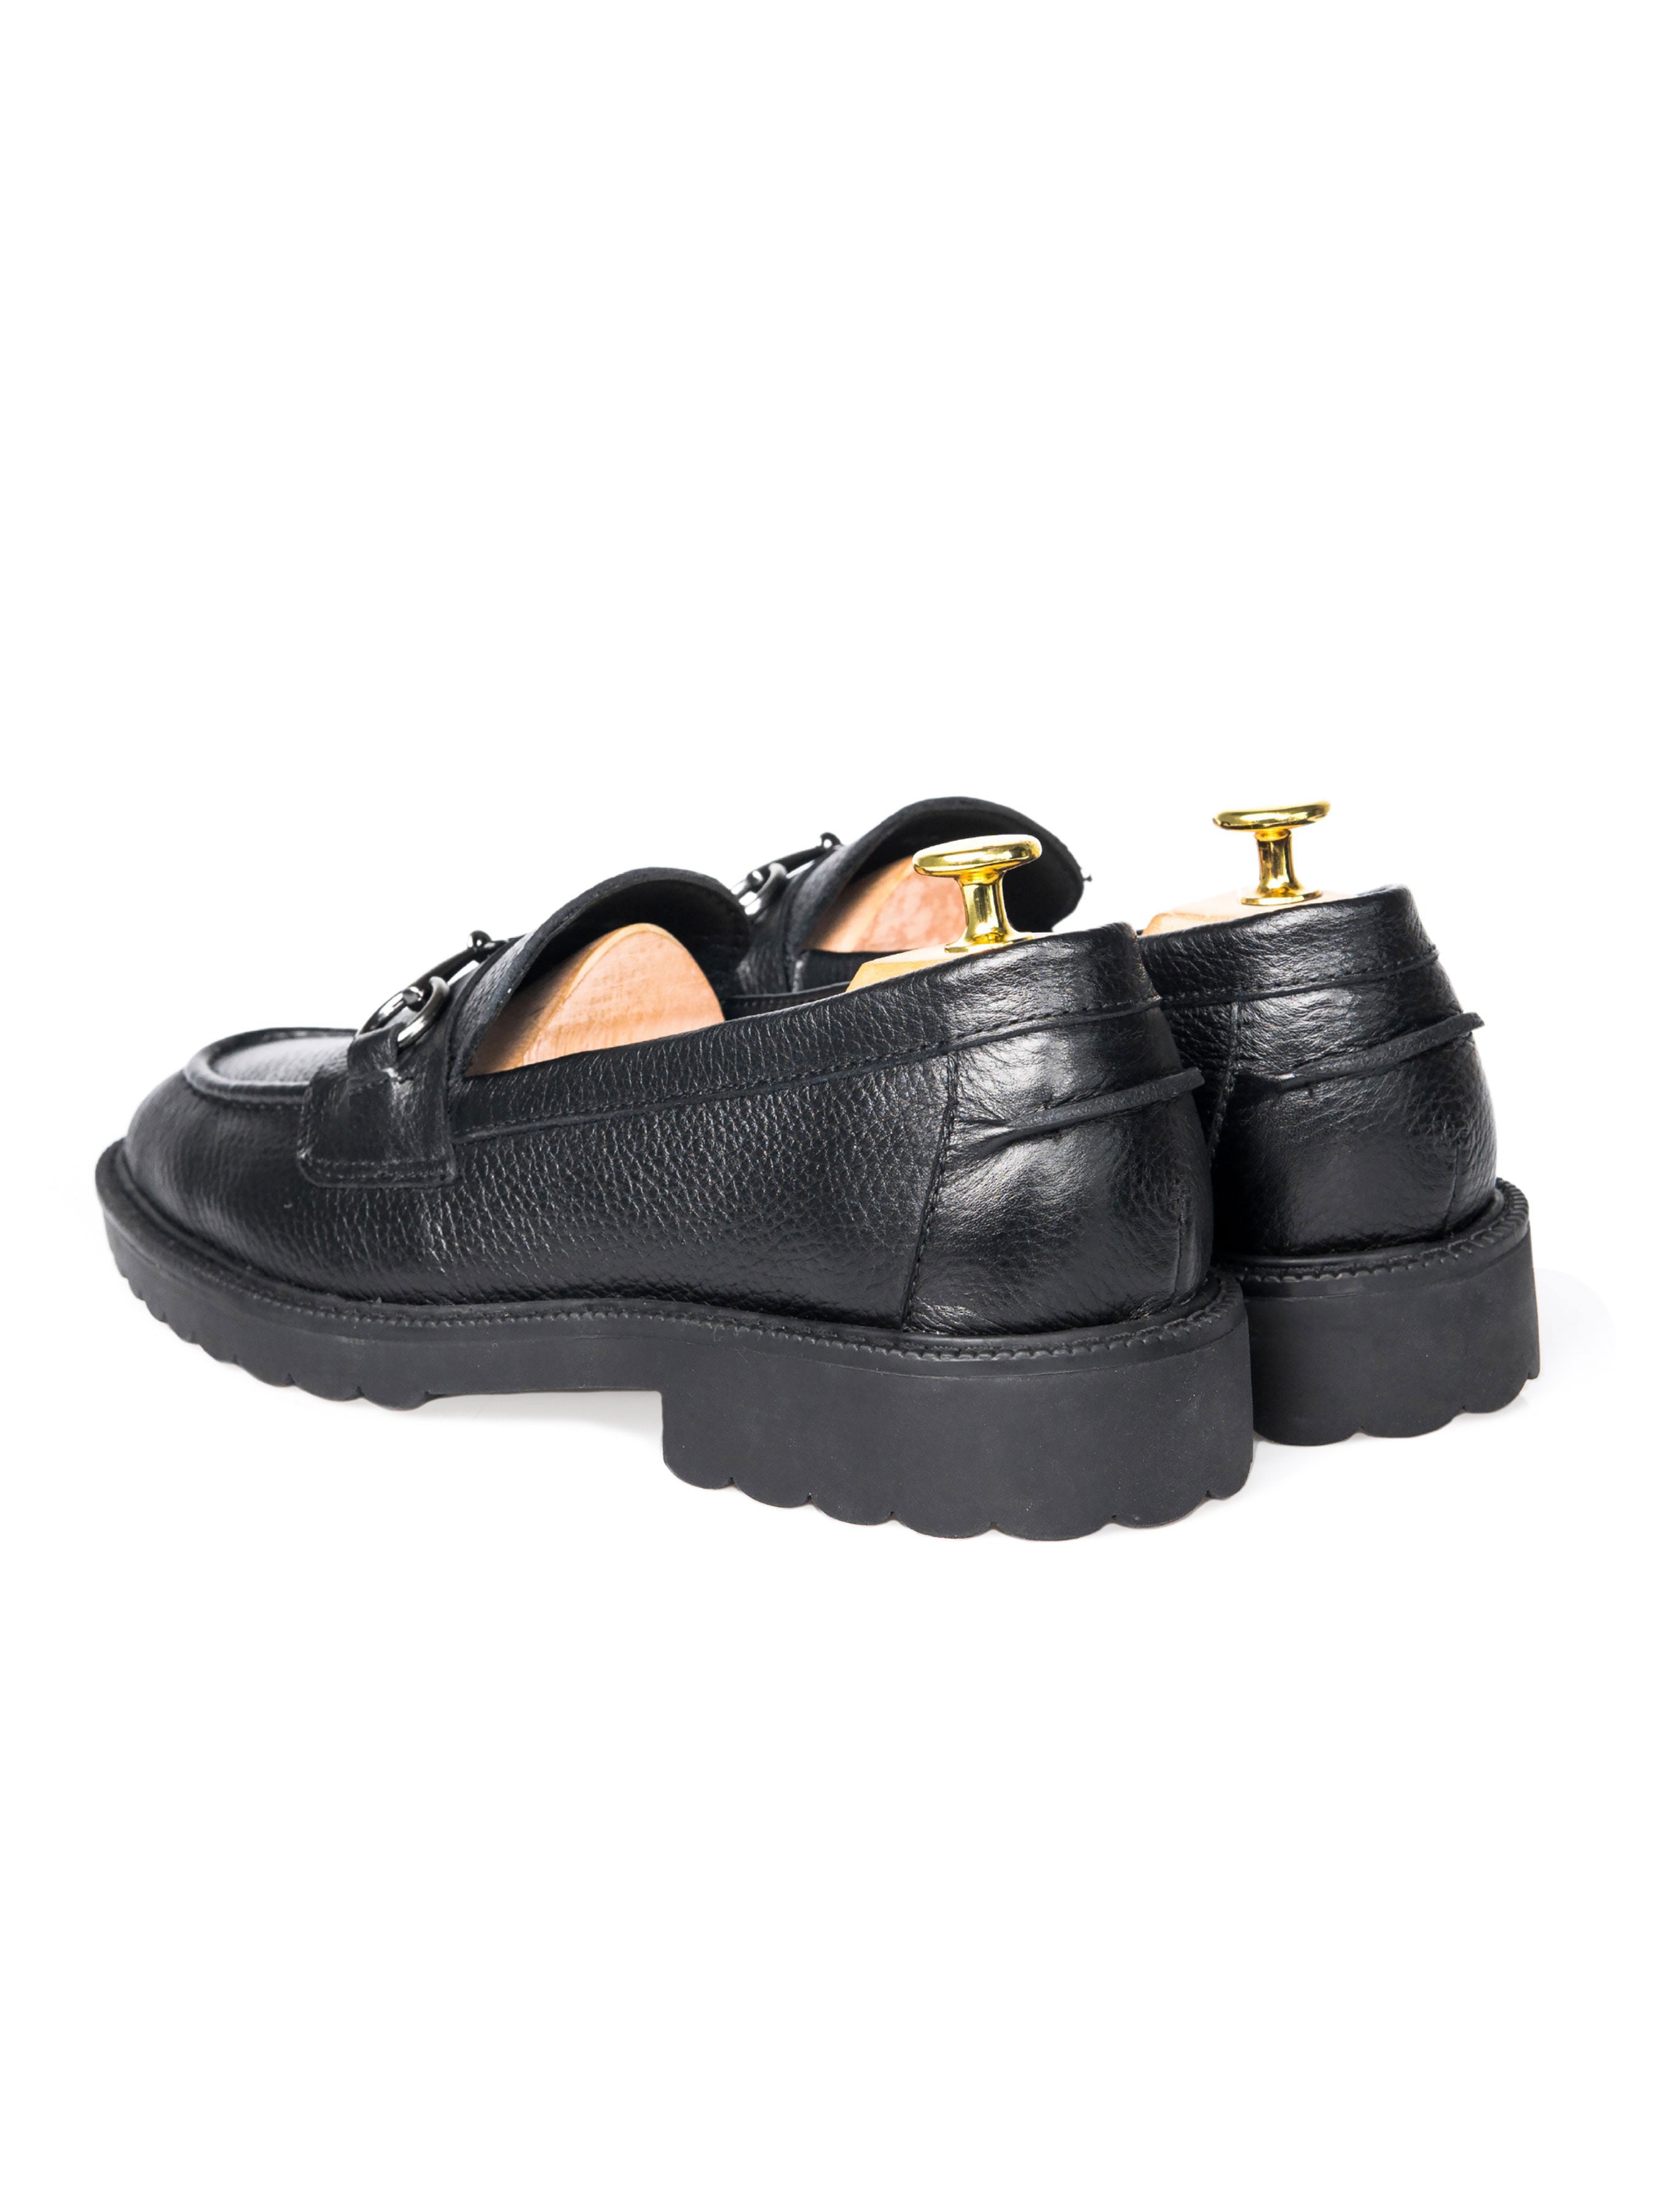 Penny Loafer Horsebit Buckle - Black Pebble Grain Leather (Combat Sole) - Zeve Shoes